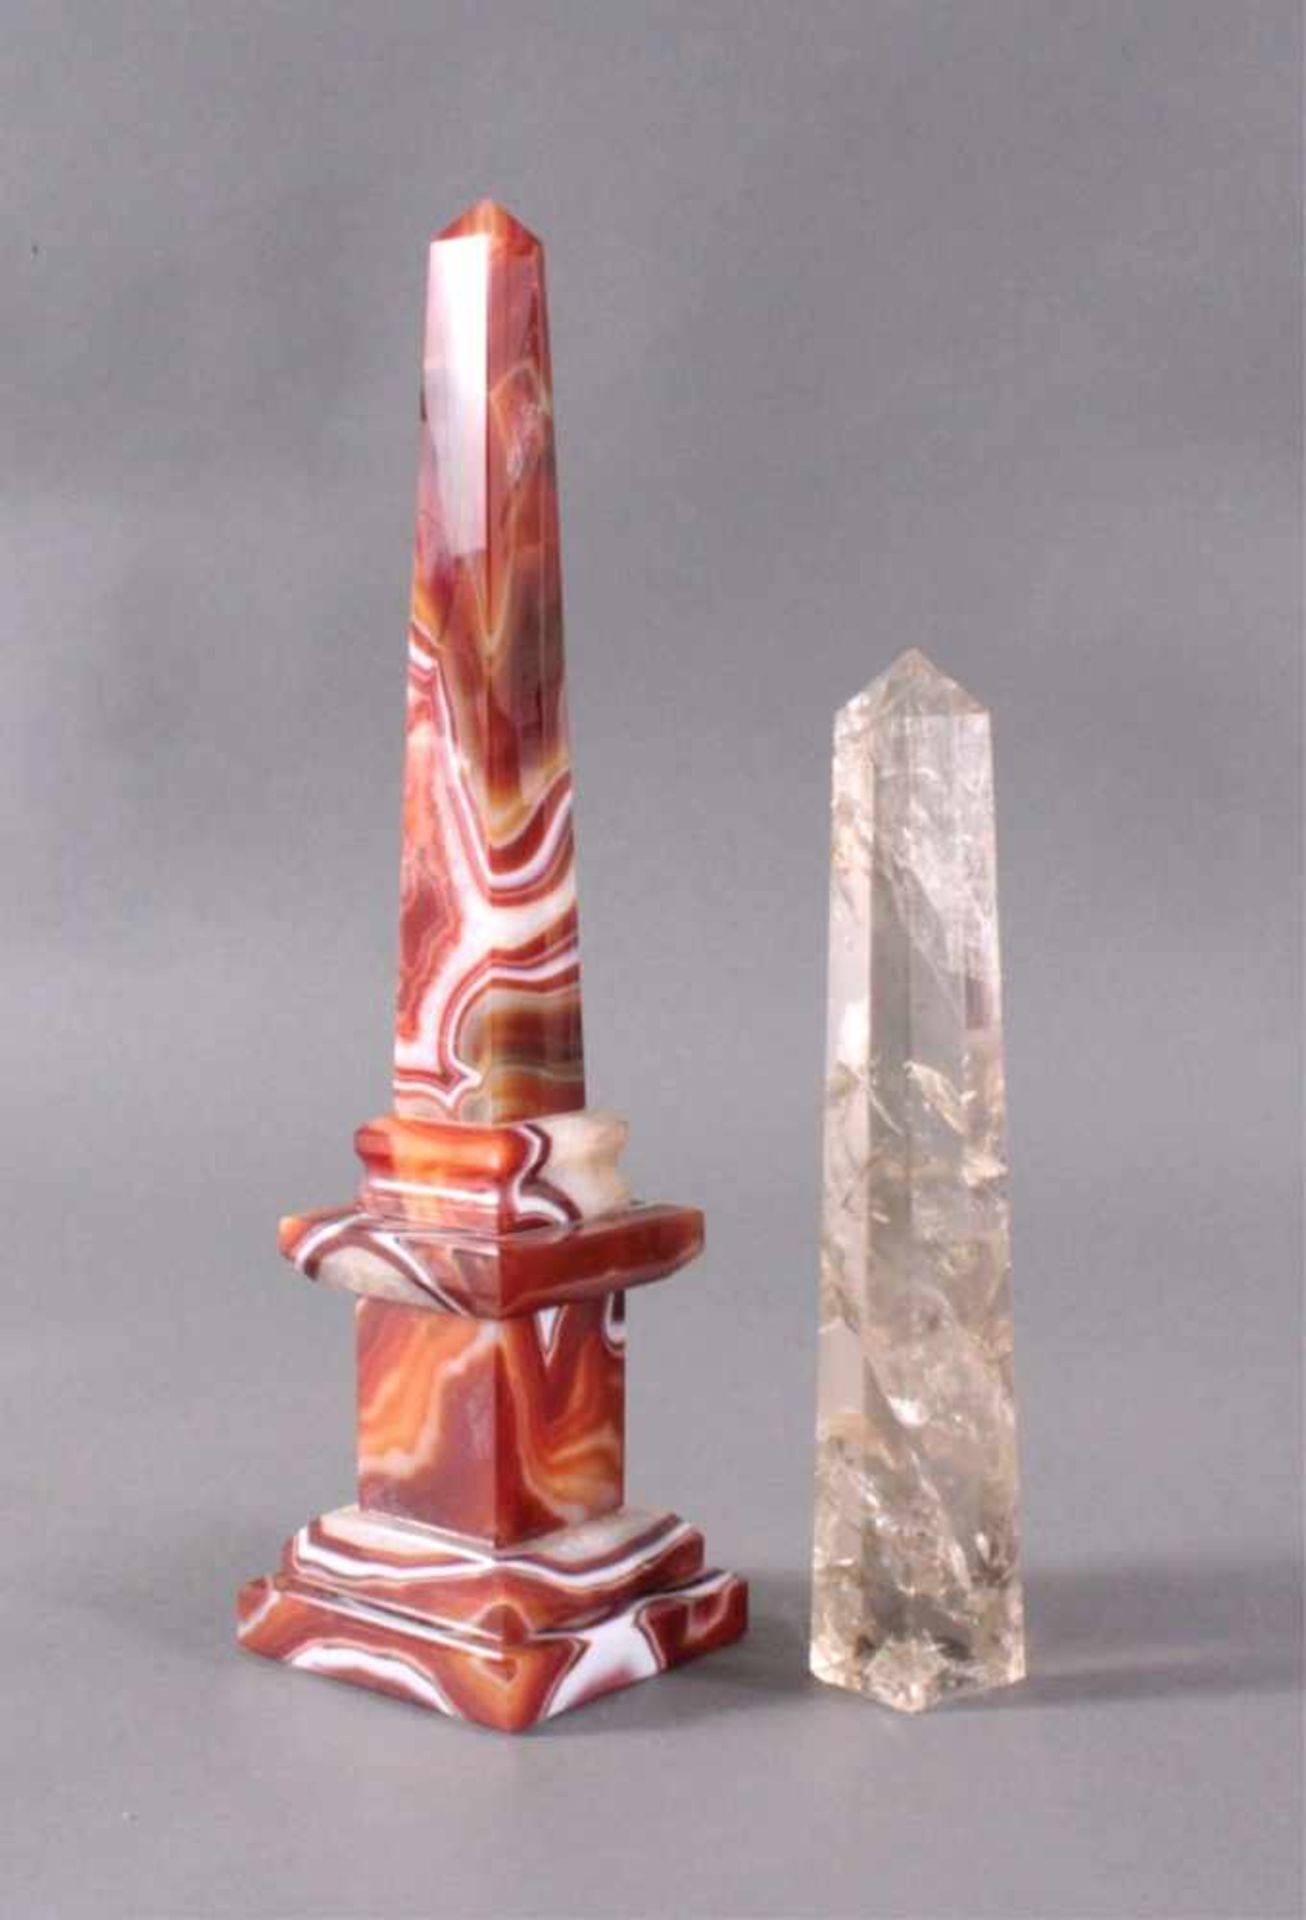 Achat und Rauchquarz ObeliskenRauchquarz, mit Einschlüsse, ca. H-23 cm, ca. 0,550g.Achat Obelisk - Bild 2 aus 4